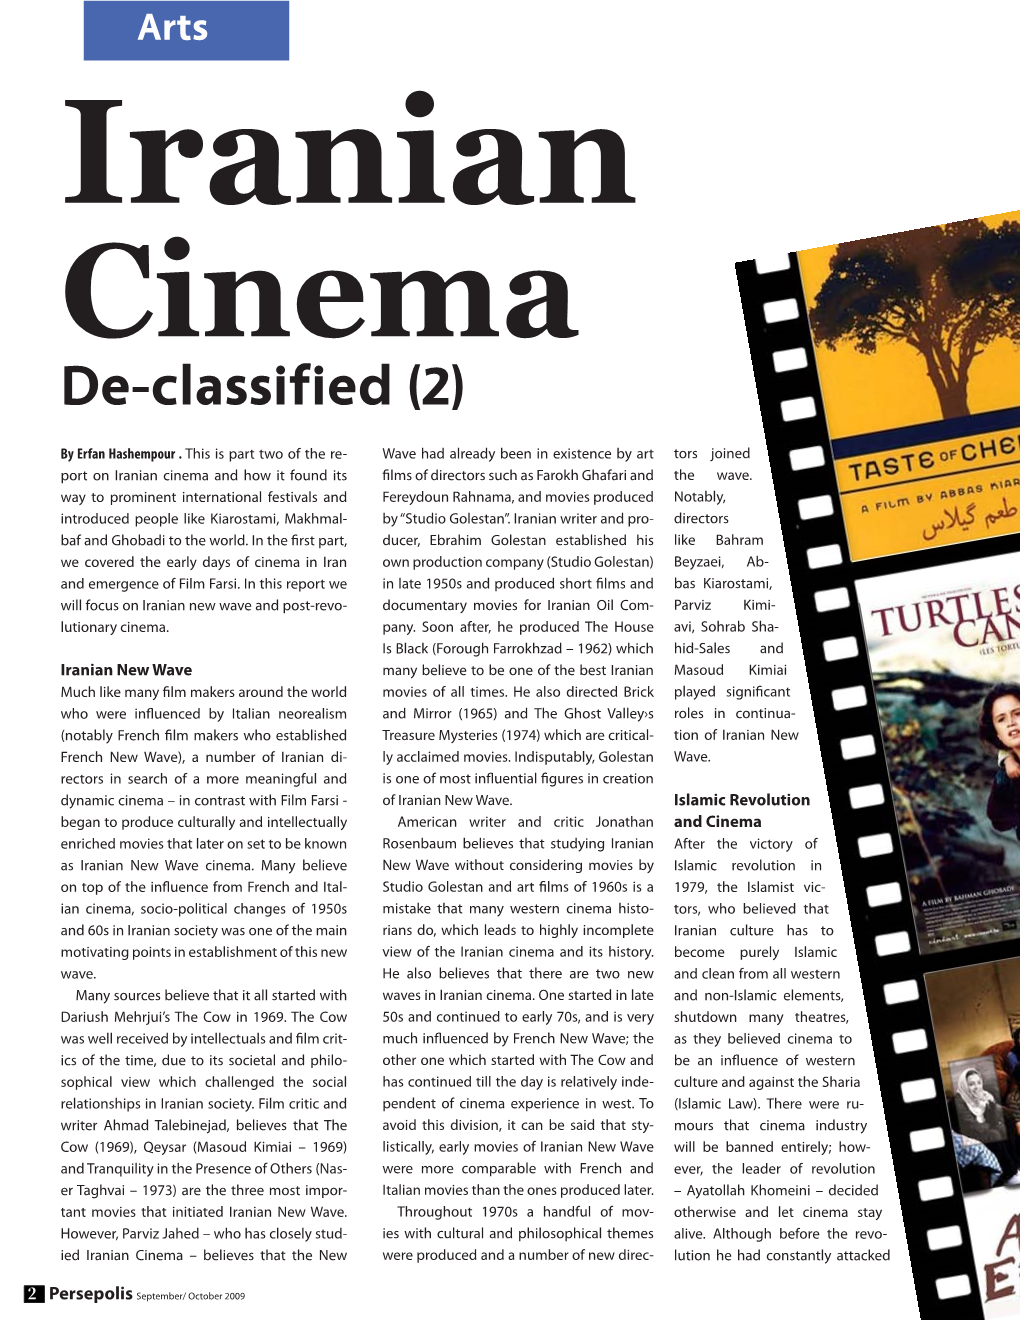 Iranian Cinema De-Classified (2)